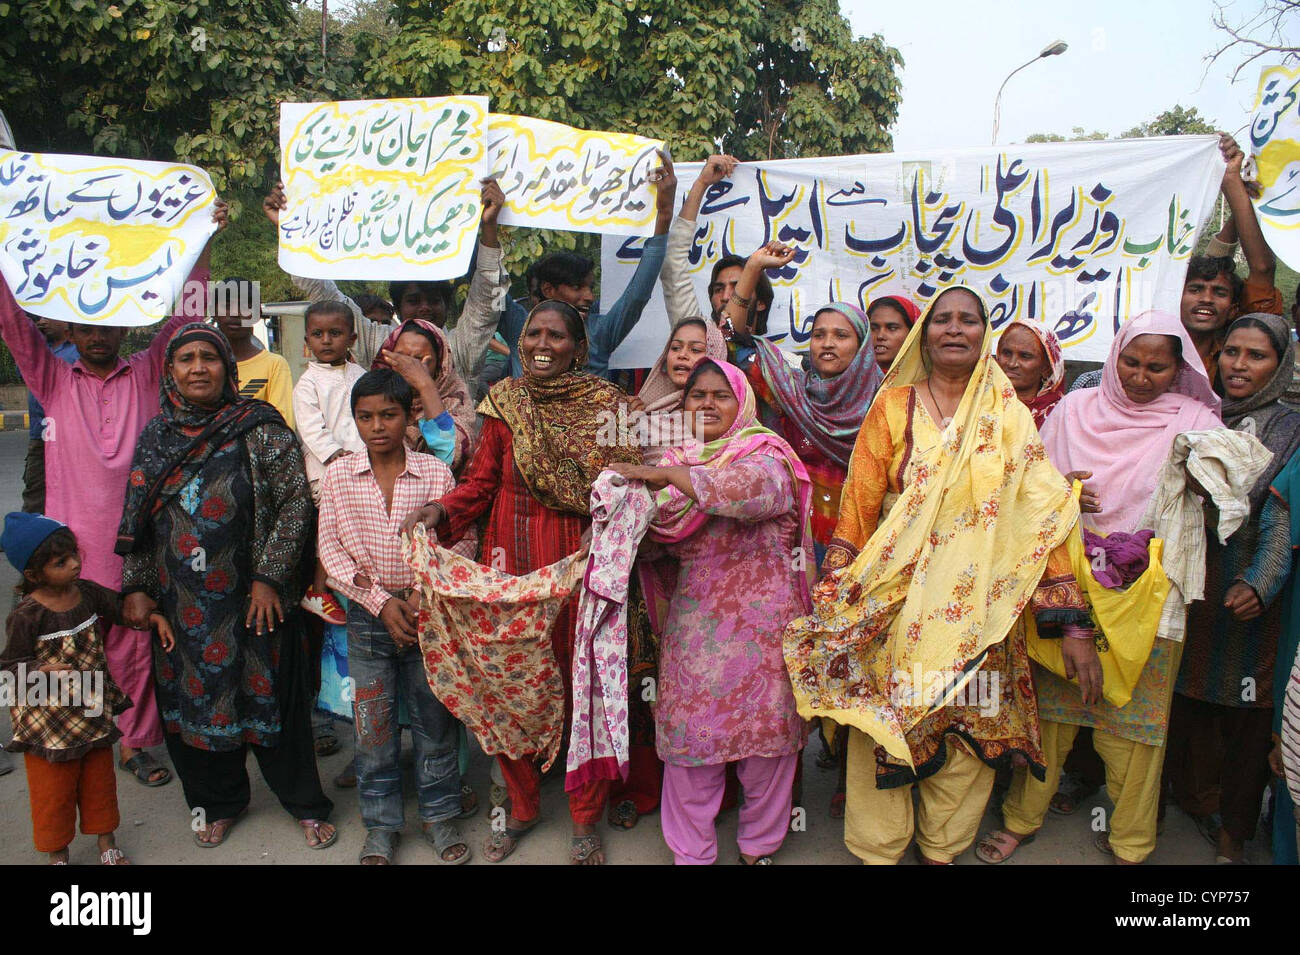 I residenti di Kot Radha Kishan distretto di Kasur chant slogan contro i loro agenti di polizia locali che hanno lanciato un fake FIR contro di loro, durante una manifestazione di protesta a Lahore press club giovedì 08 novembre, 2012. Foto Stock